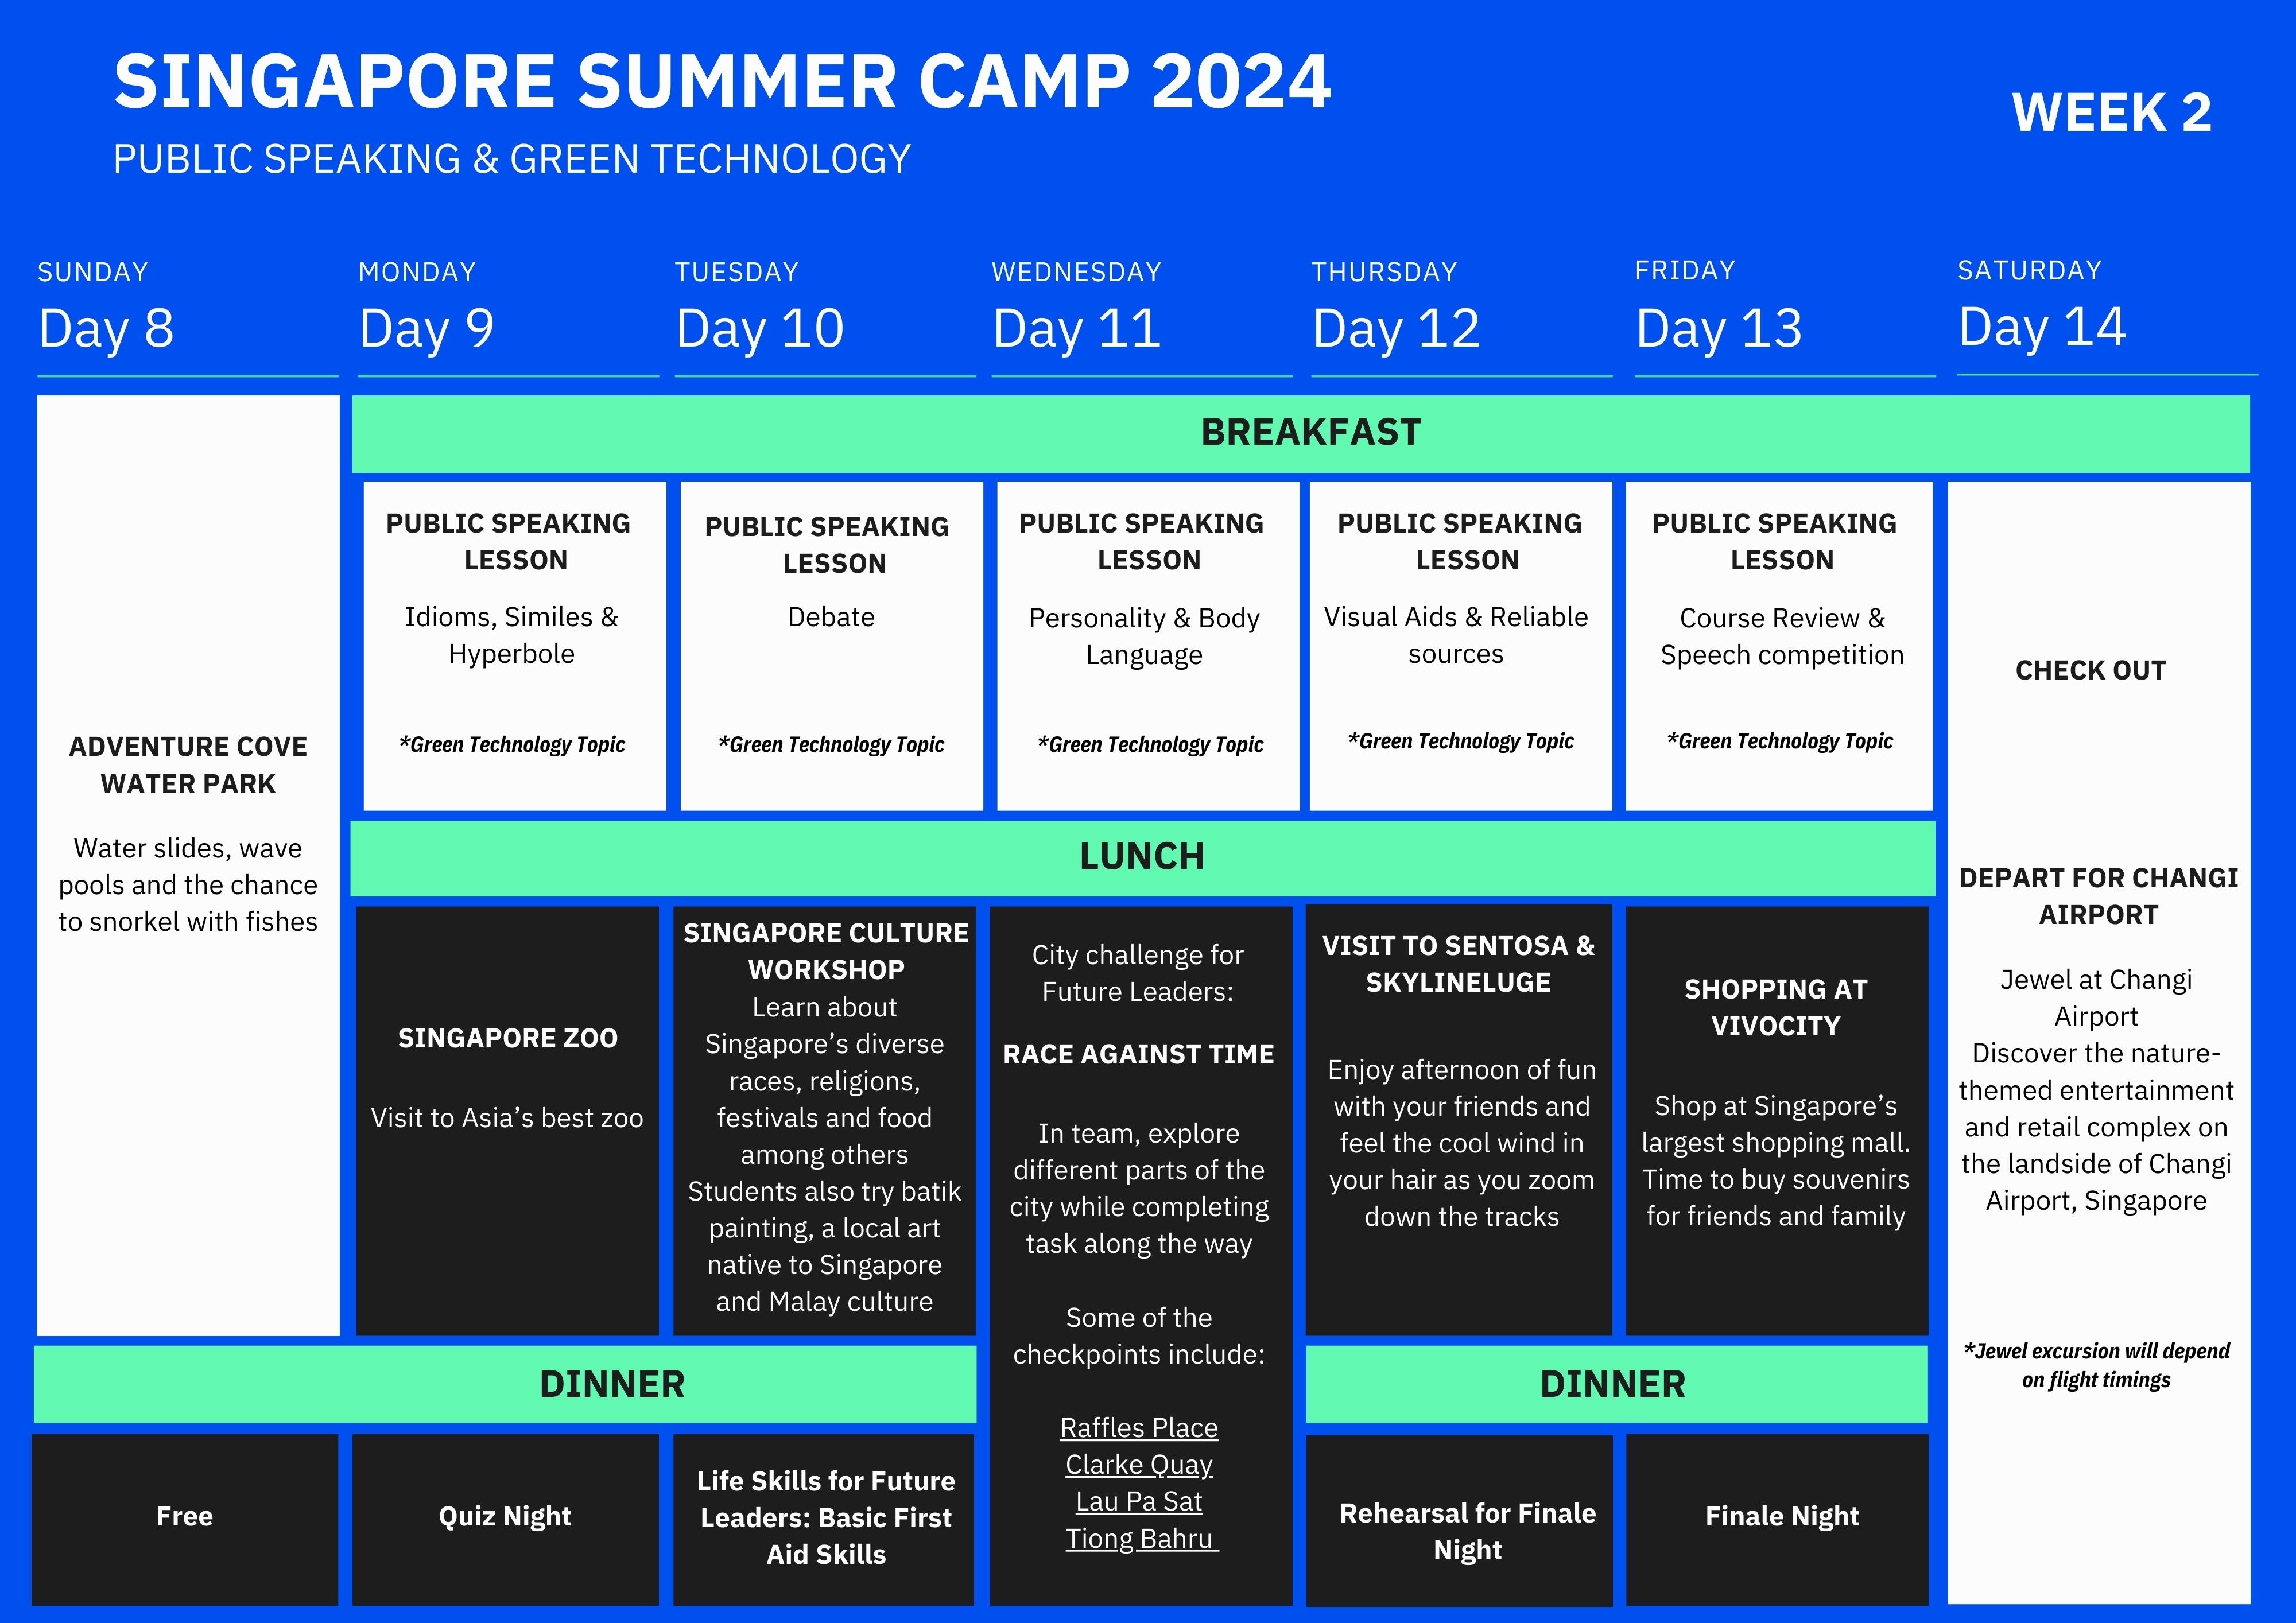 Singapore summer camp schedule - week 2